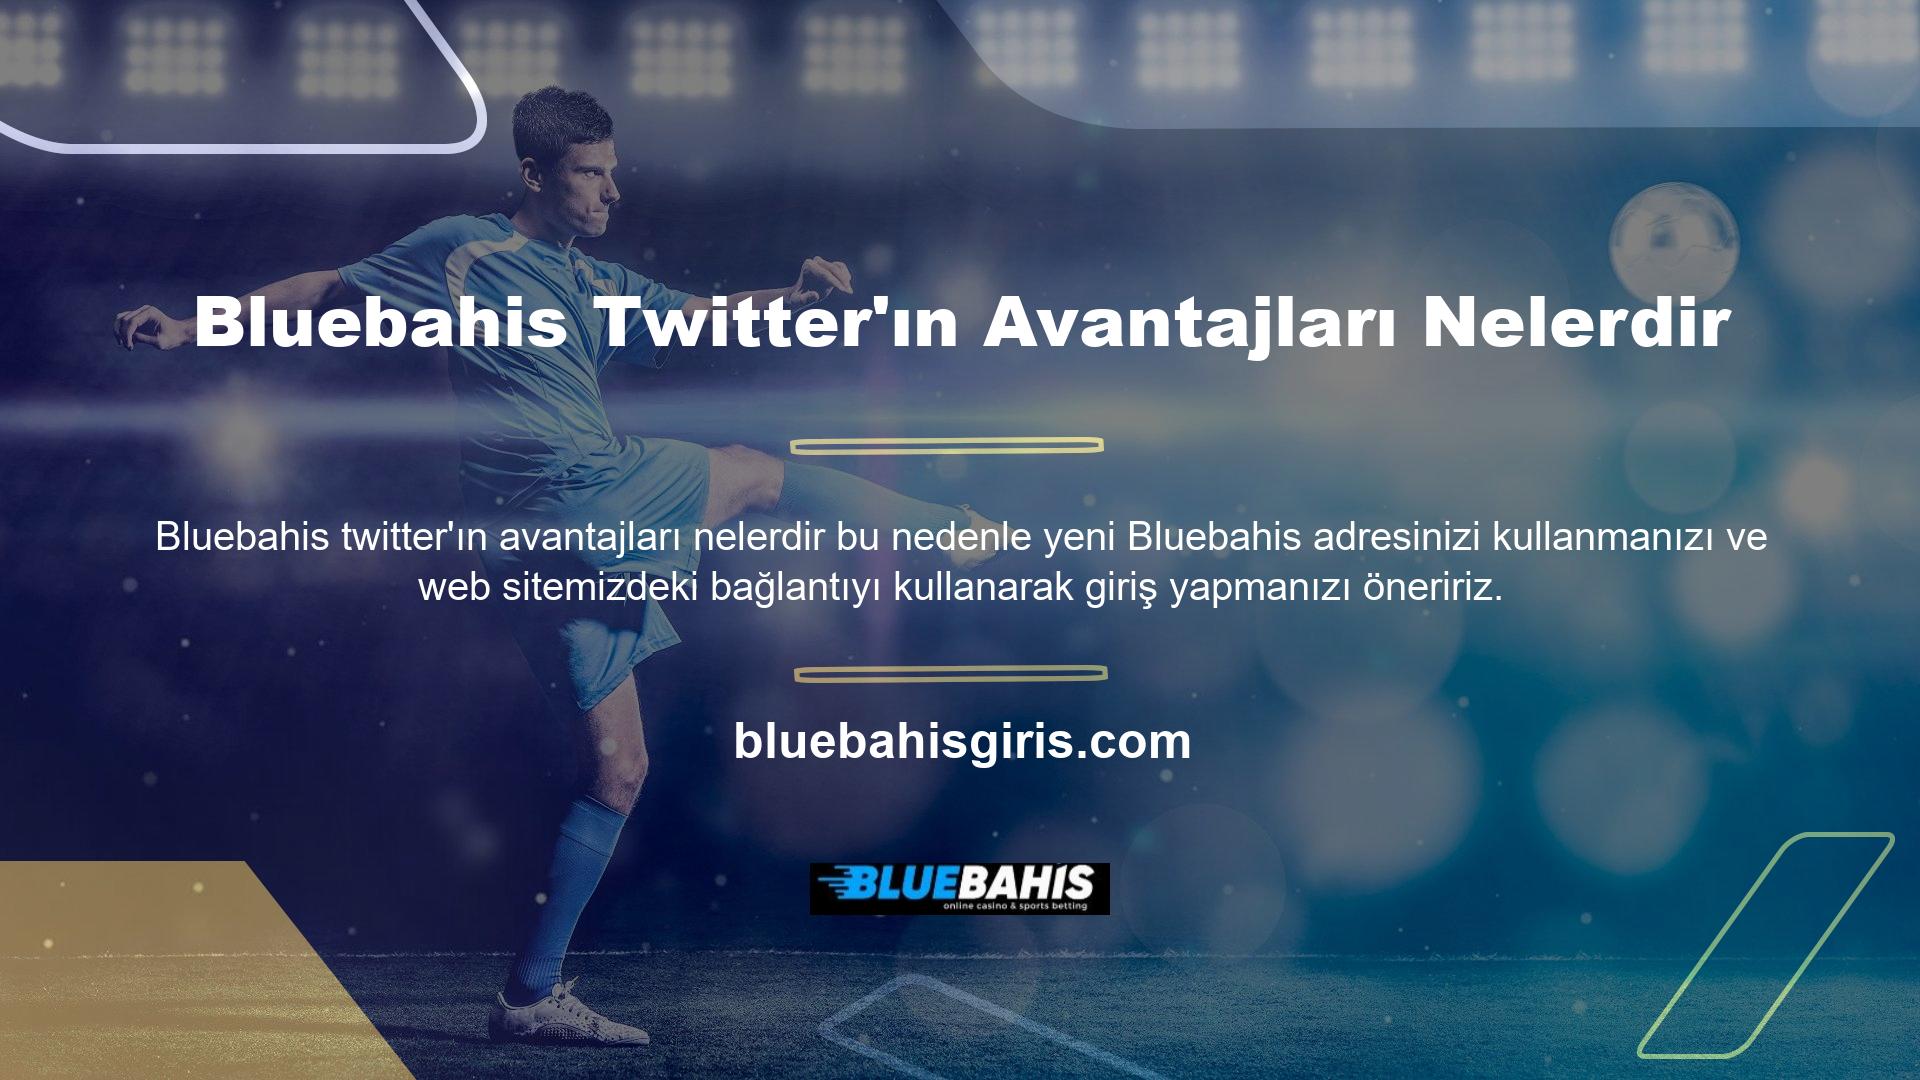 Türkiye'deki en kolay online Bluebahis markalarından biri olarak kabul edilen markayı nasıl edinebilirsiniz? Buradaki bağlantılar ve düğmeler sizi kaydolabileceğiniz, kaydolabileceğiniz, para yatırabileceğiniz veya çekebileceğiniz en yeni Bluebahis Twitter ana sayfasına götürecektir